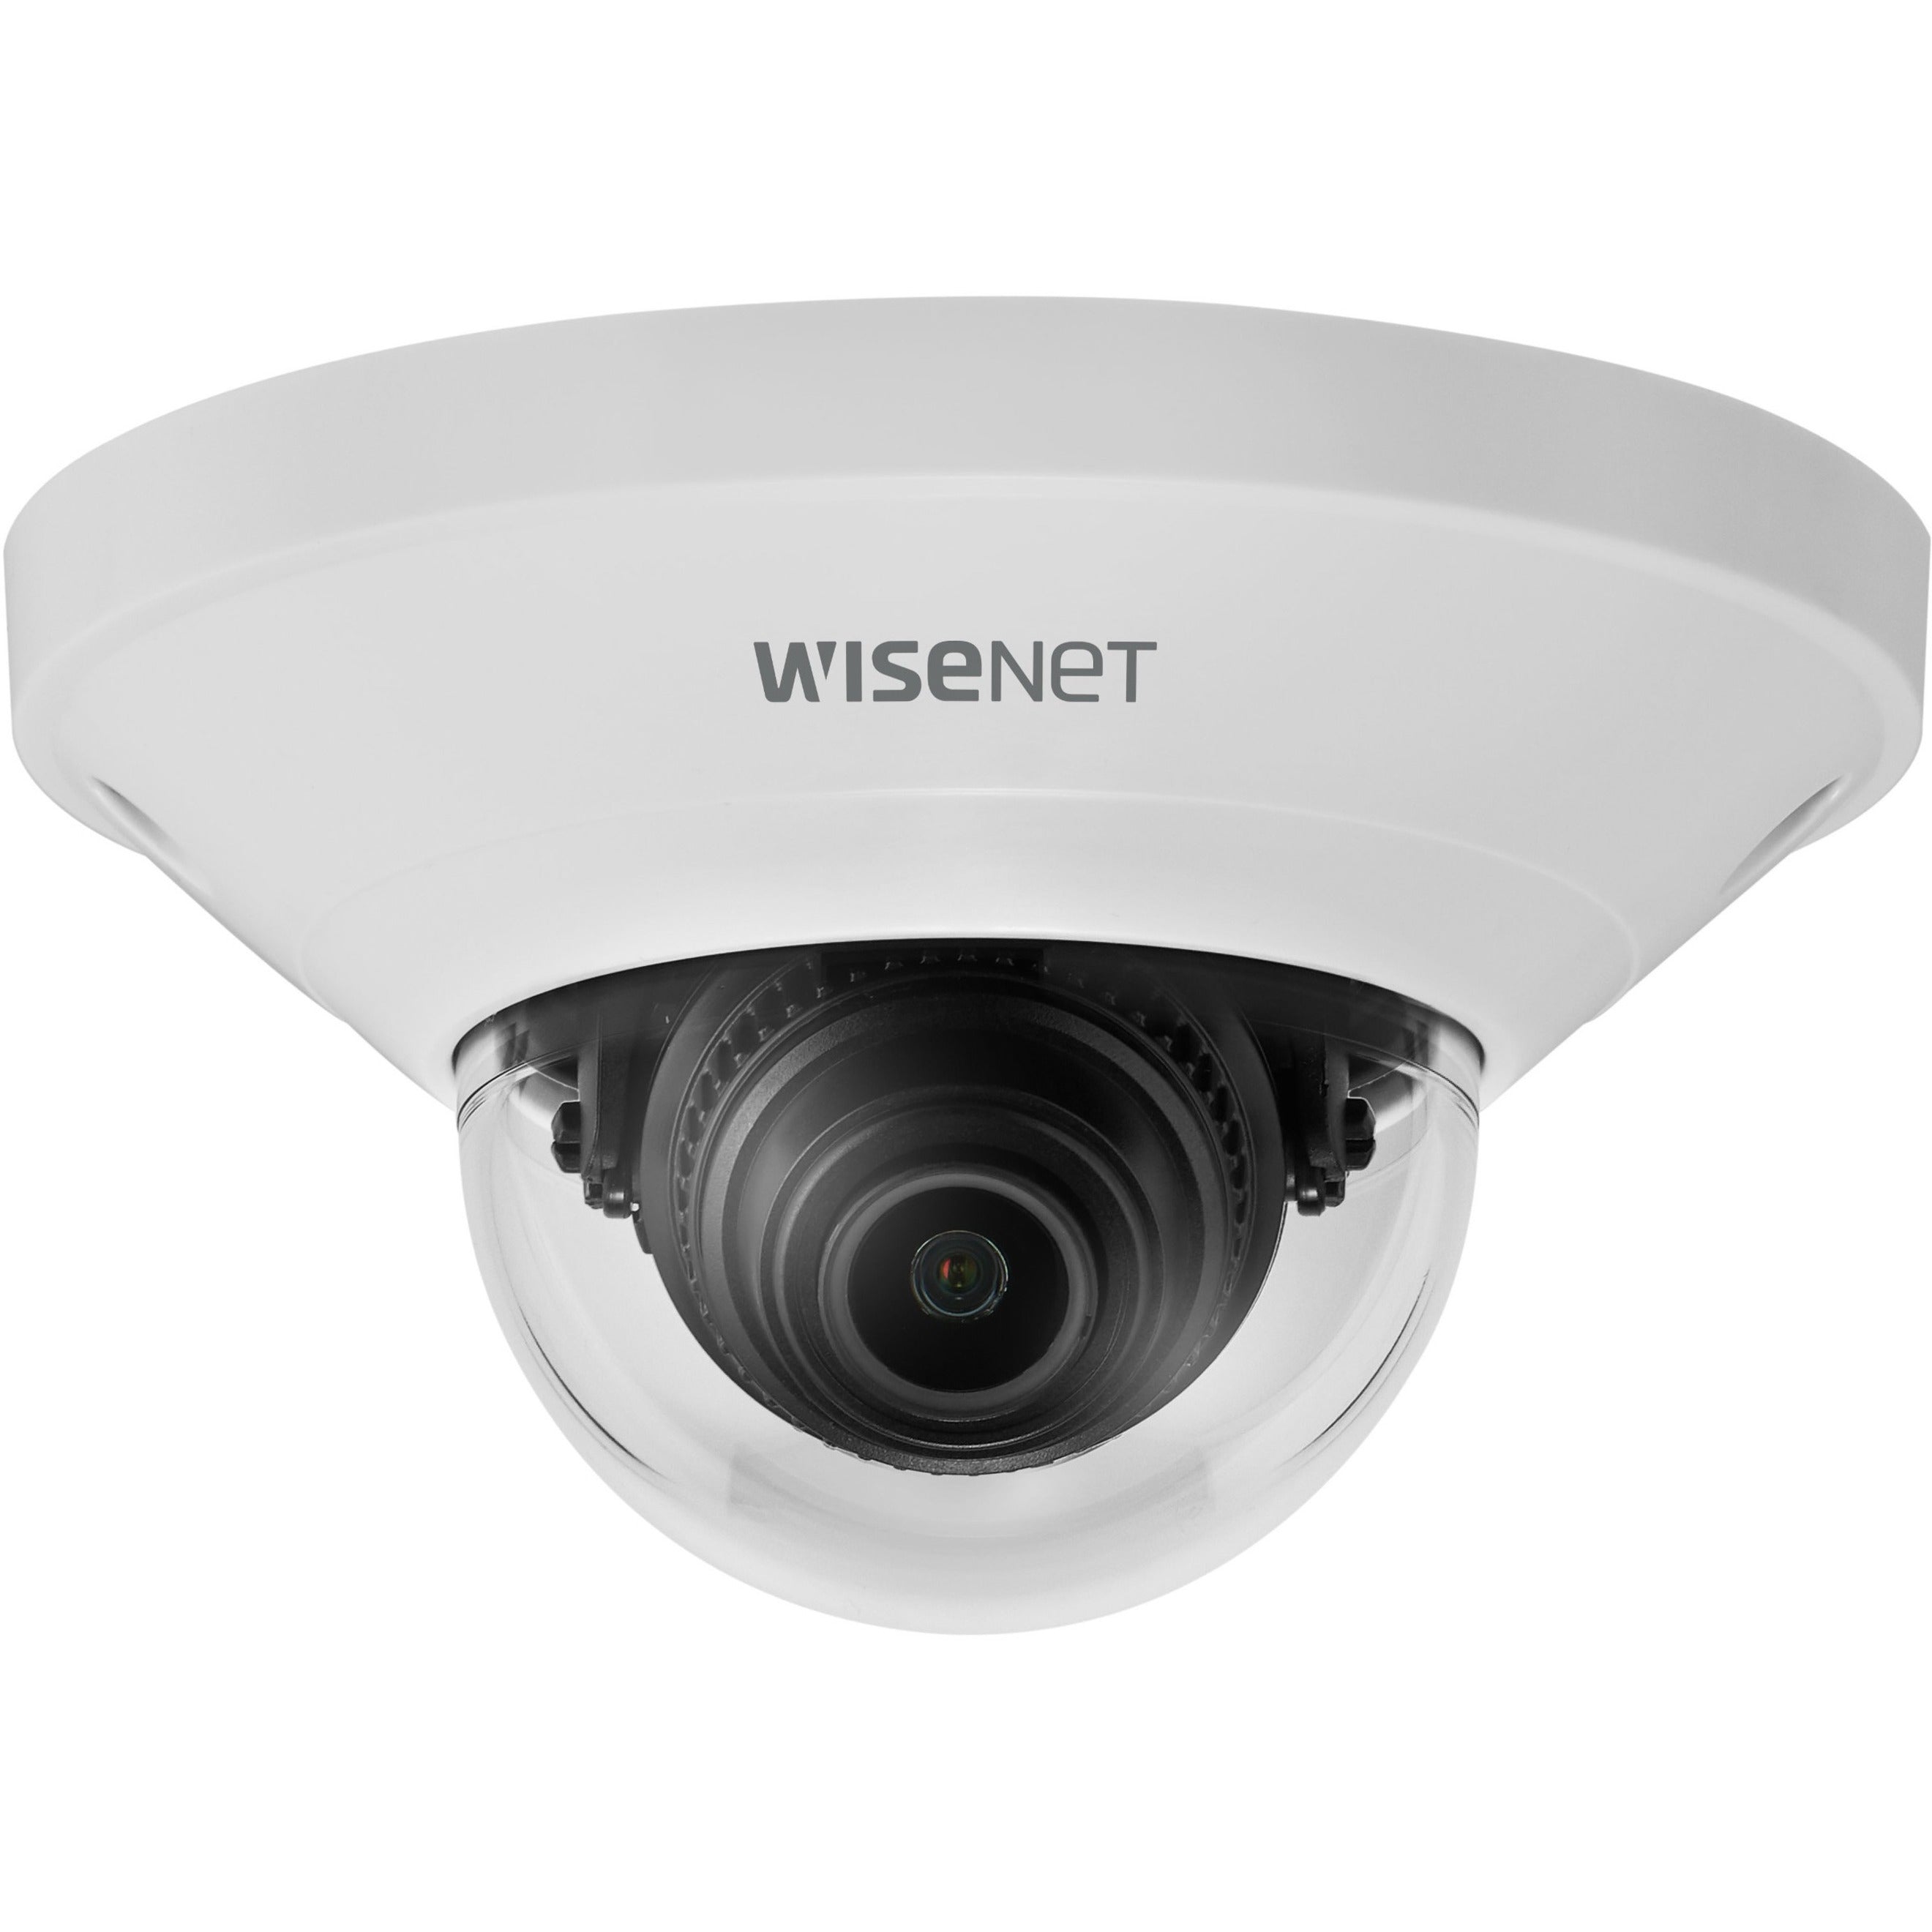 Wisenet QND-8011 5 MP Netzwerk Super-Kompakte Dome-Kamera mit 28 mm Objektiv Innenbereich 30fps SD-Karten-Lokalspeicher